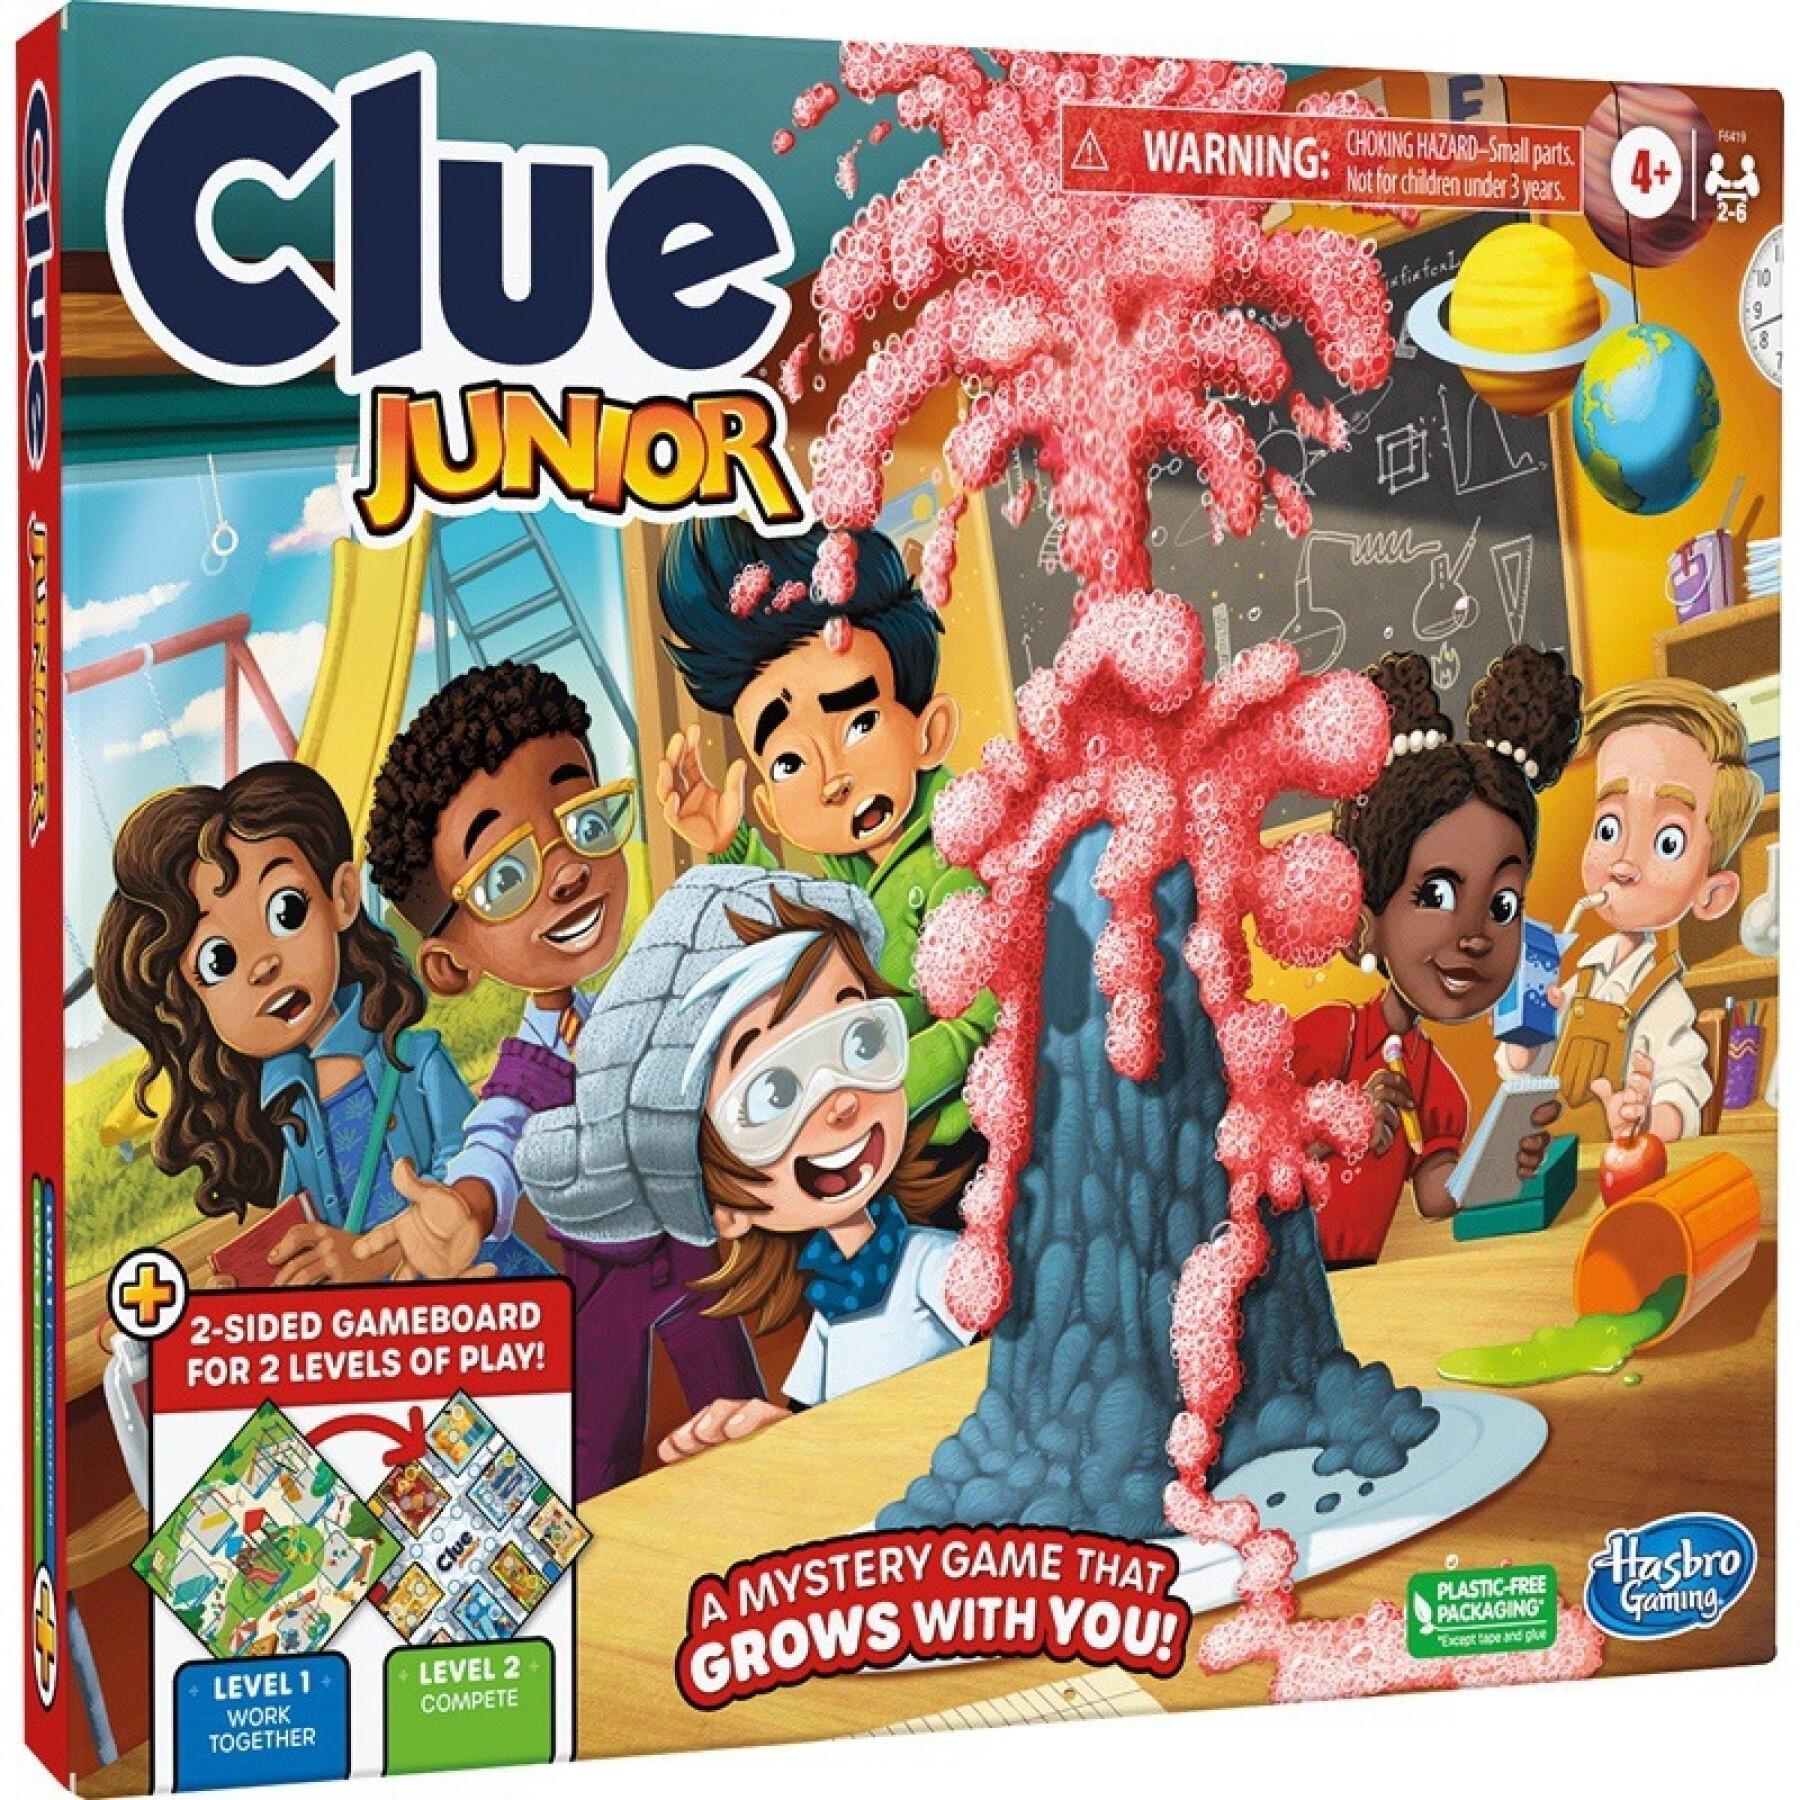 Jeux de société Hasbro Cluedo Junior - Jeux classiques